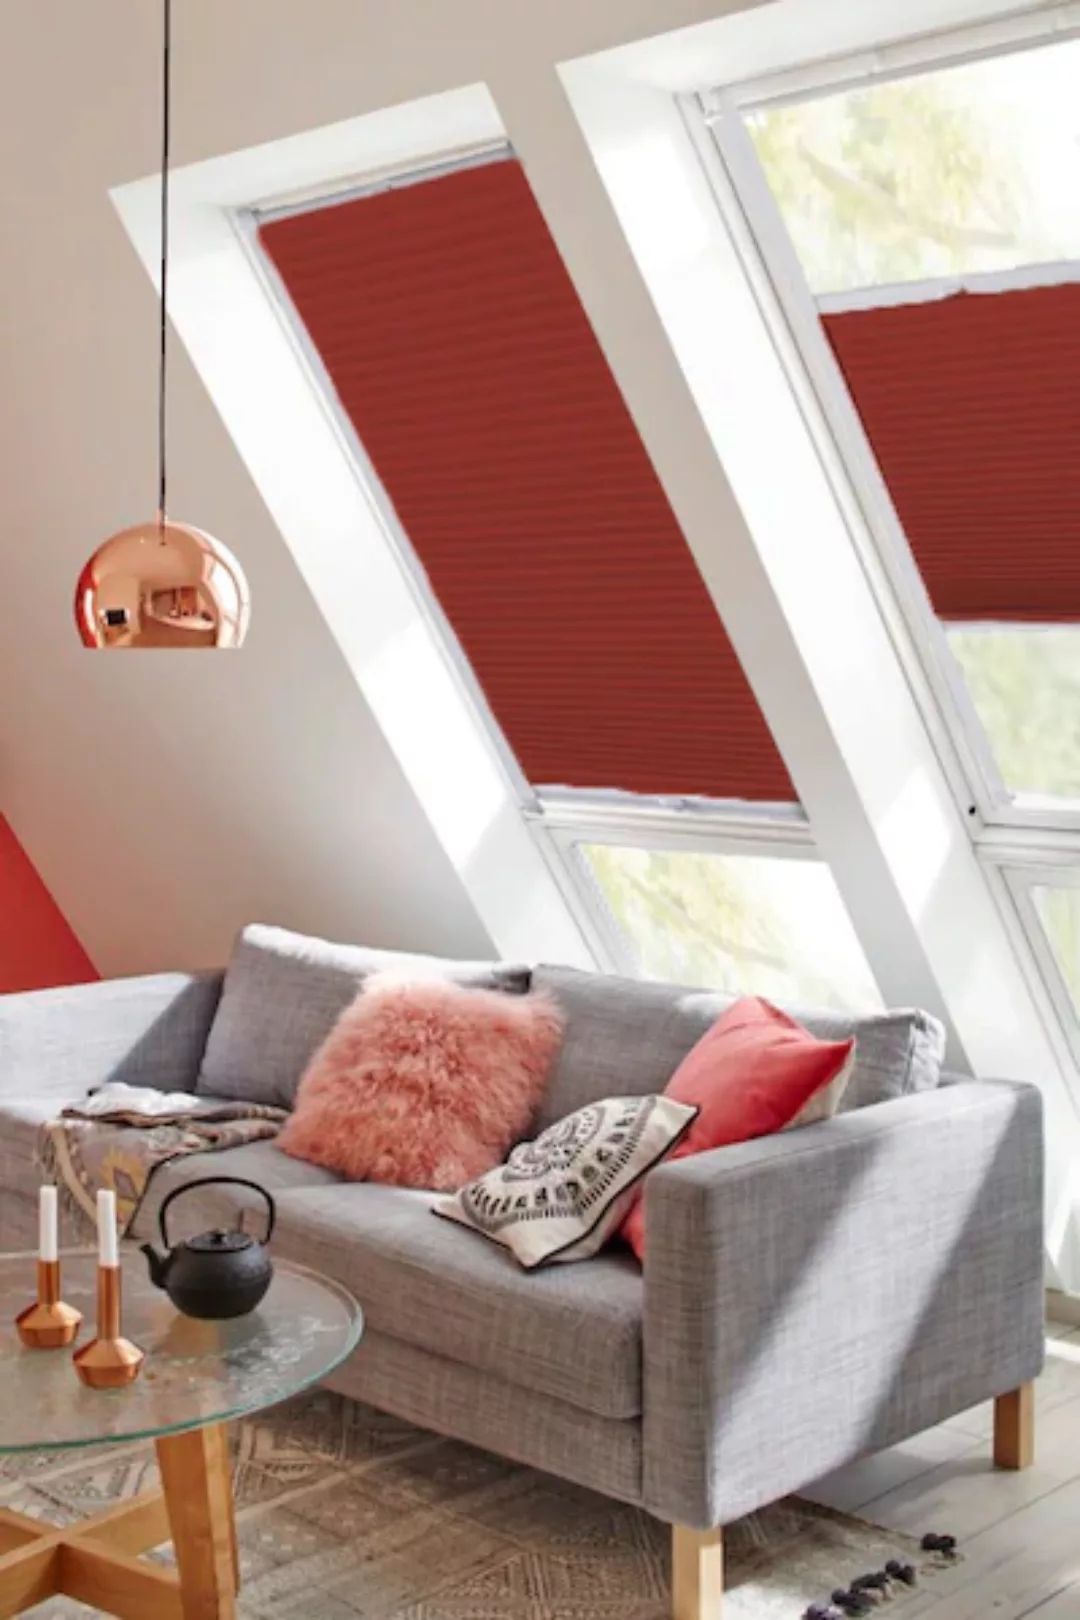 sunlines Dachfensterplissee »StartUp Style Honeycomb VD«, abdunkelnd, versp günstig online kaufen